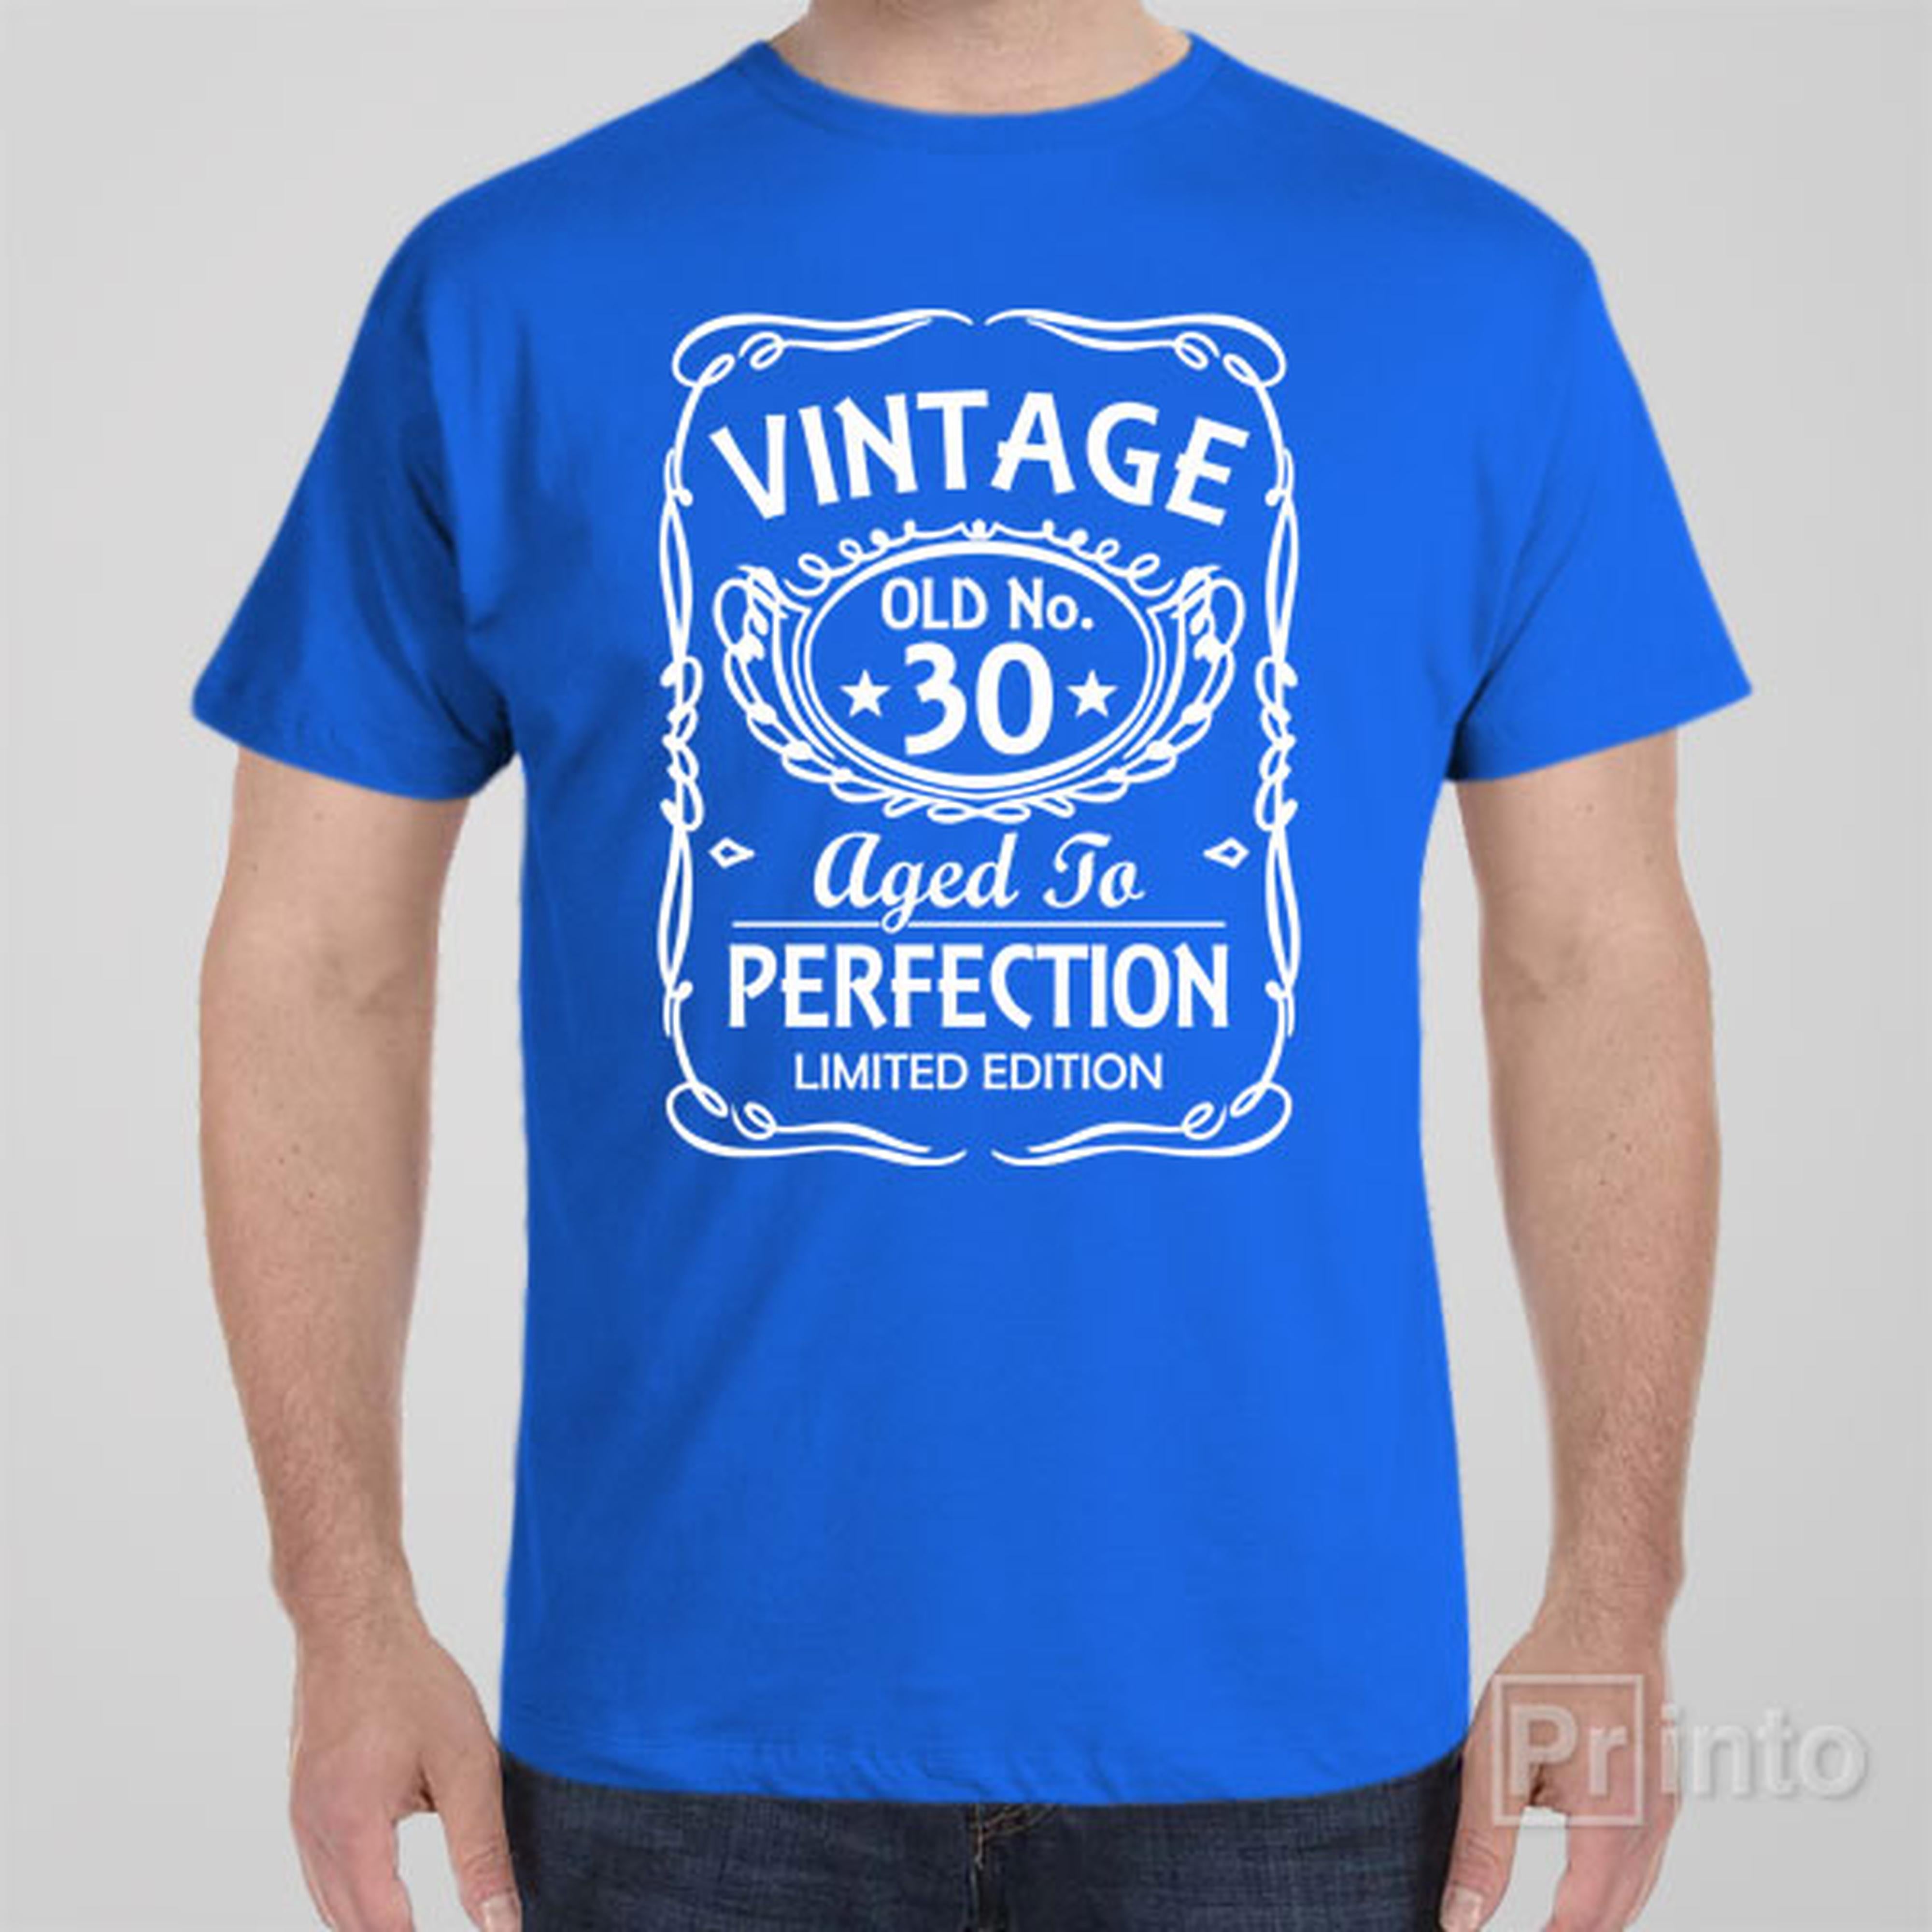 vintage-old-no-30-t-shirt